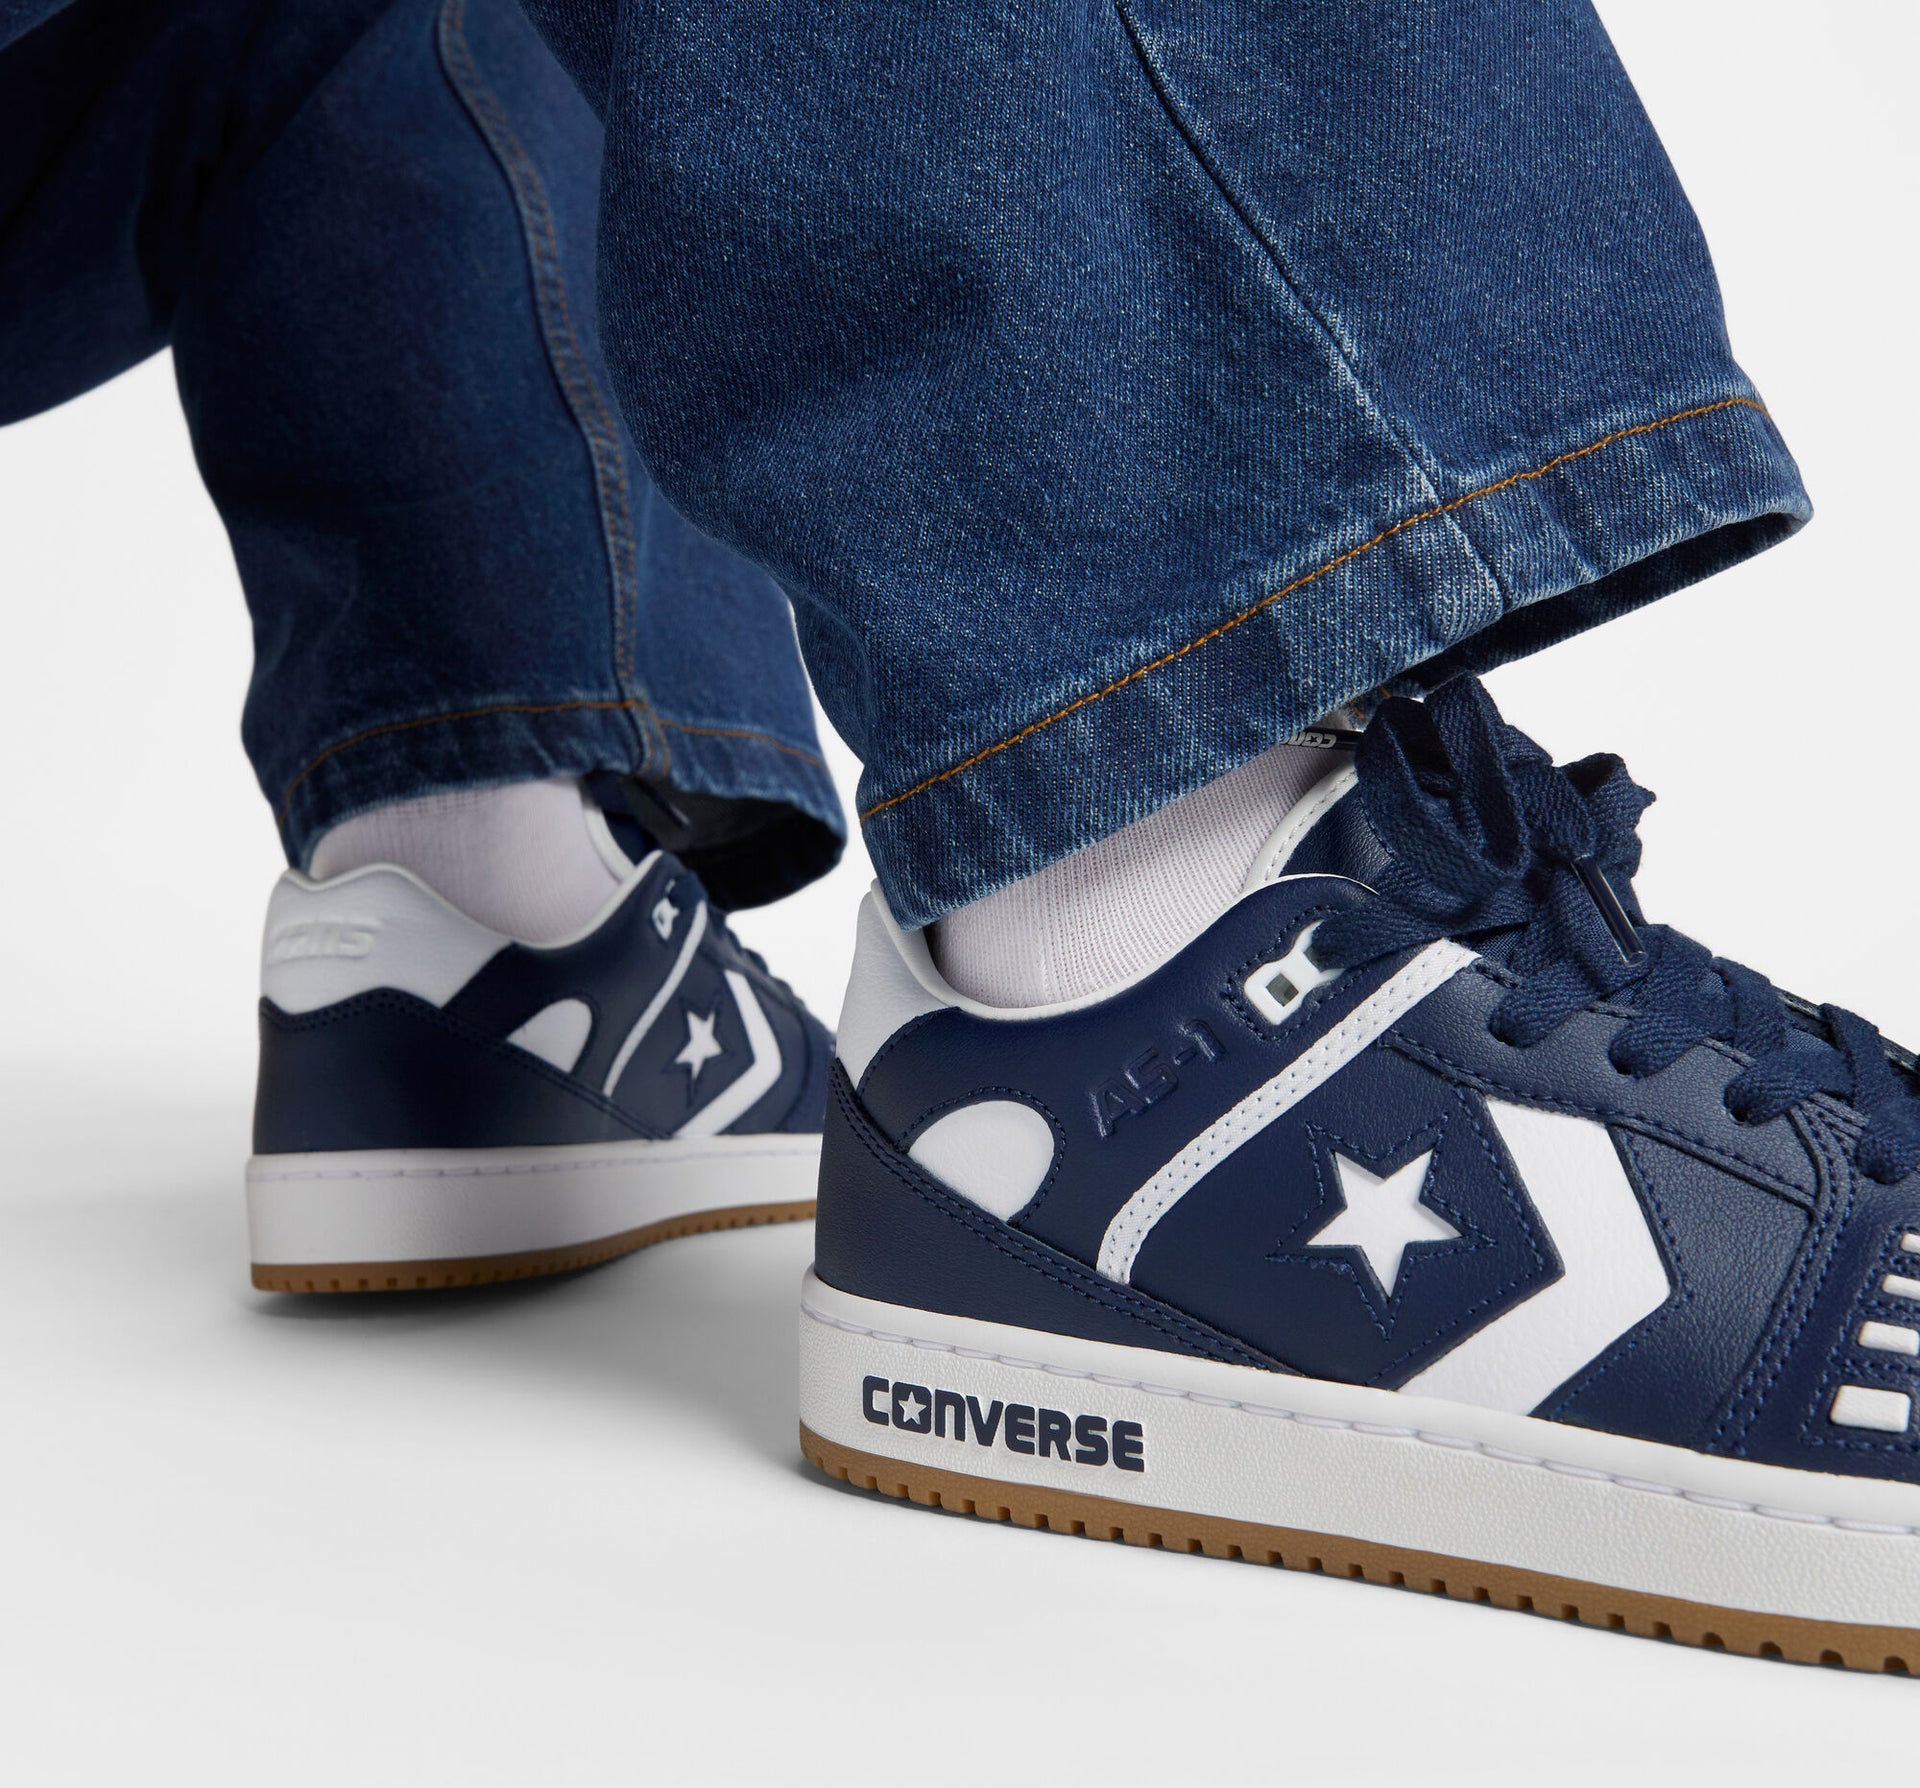 Converse Cons AS-1 Pro Ox